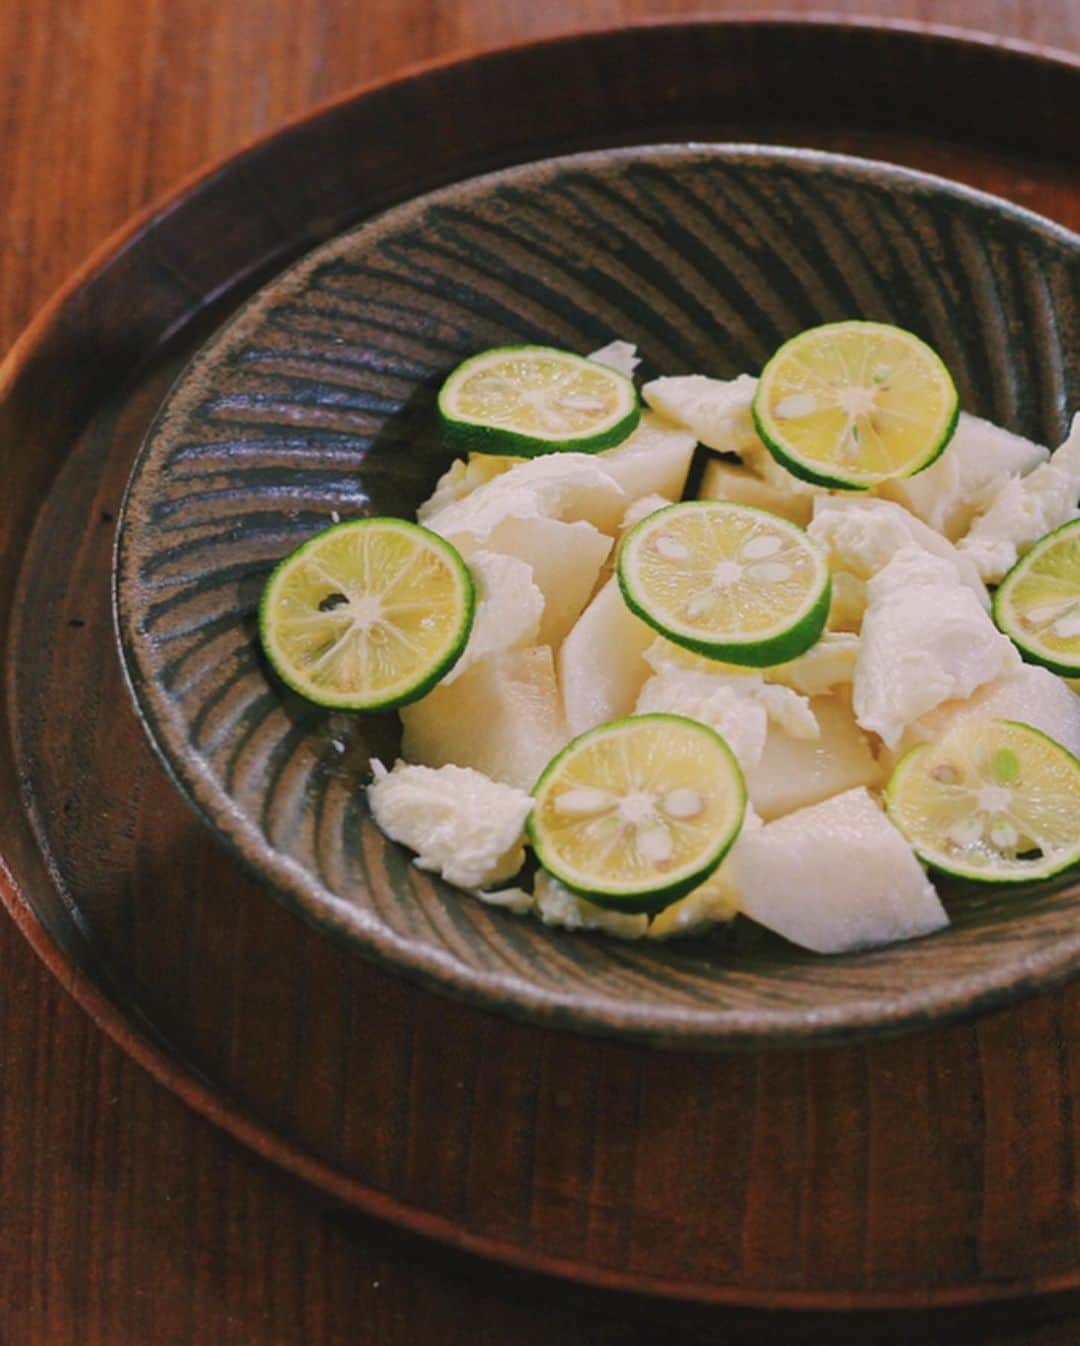 Kaori from Japanese Kitchenのインスタグラム：「【レシピ動画作ってみました】梨とちぎりモッツァレラのサラダ ・ こんばんは。 久々に気合を入れてレシピ動画を作ってみました。 以前の投稿で「乾燥対策には白いもの」という 薬膳の知恵をお伝えしたのですが、 白をテーマに簡単サラダを作ってみました。 すだちが盛り付けのアクセントです。 ワインのお供にもぴったりですよ。 レシピ動画はスワイプして2枚目です。 (調理時間10分を57秒に短縮しました笑) ・ 今回は「明治北海道十勝生モッツァレラ」を使いました。 こちらの商品を使ったレストランの試食会に参加させてもらったのですが、何も知らされず生モッツァレラの前菜が登場し、食べた後にこちらの商品が使われていた、とシェフからのネタバラシがあるというプチどっきりがありました笑　ミルキーな味わいでそのままでも十分美味しかったですが、ちぎって食べるのがポイントだそうで。包丁で切った時よりもオリーブオイルがよく絡み、さらに味わい深くなりました。 今回のレシピもオリーブオイルやすだち果汁がチーズに絡むよう、生モッツァレラをちぎっております。明治北海道十勝生モッツァレラを買った際はぜひちぎりモッツァレラをお試しください。（お手伝い代わりとして子供にちぎってもらうのもアリかも…？） ・ #おうちごはん #小澤基晴 #薬膳 #サラダ #自炊 #生モッツァレラ #明治北海道十勝生モッツァレラ #ちぎりモッツァレラ #マカロニメイト #pr」